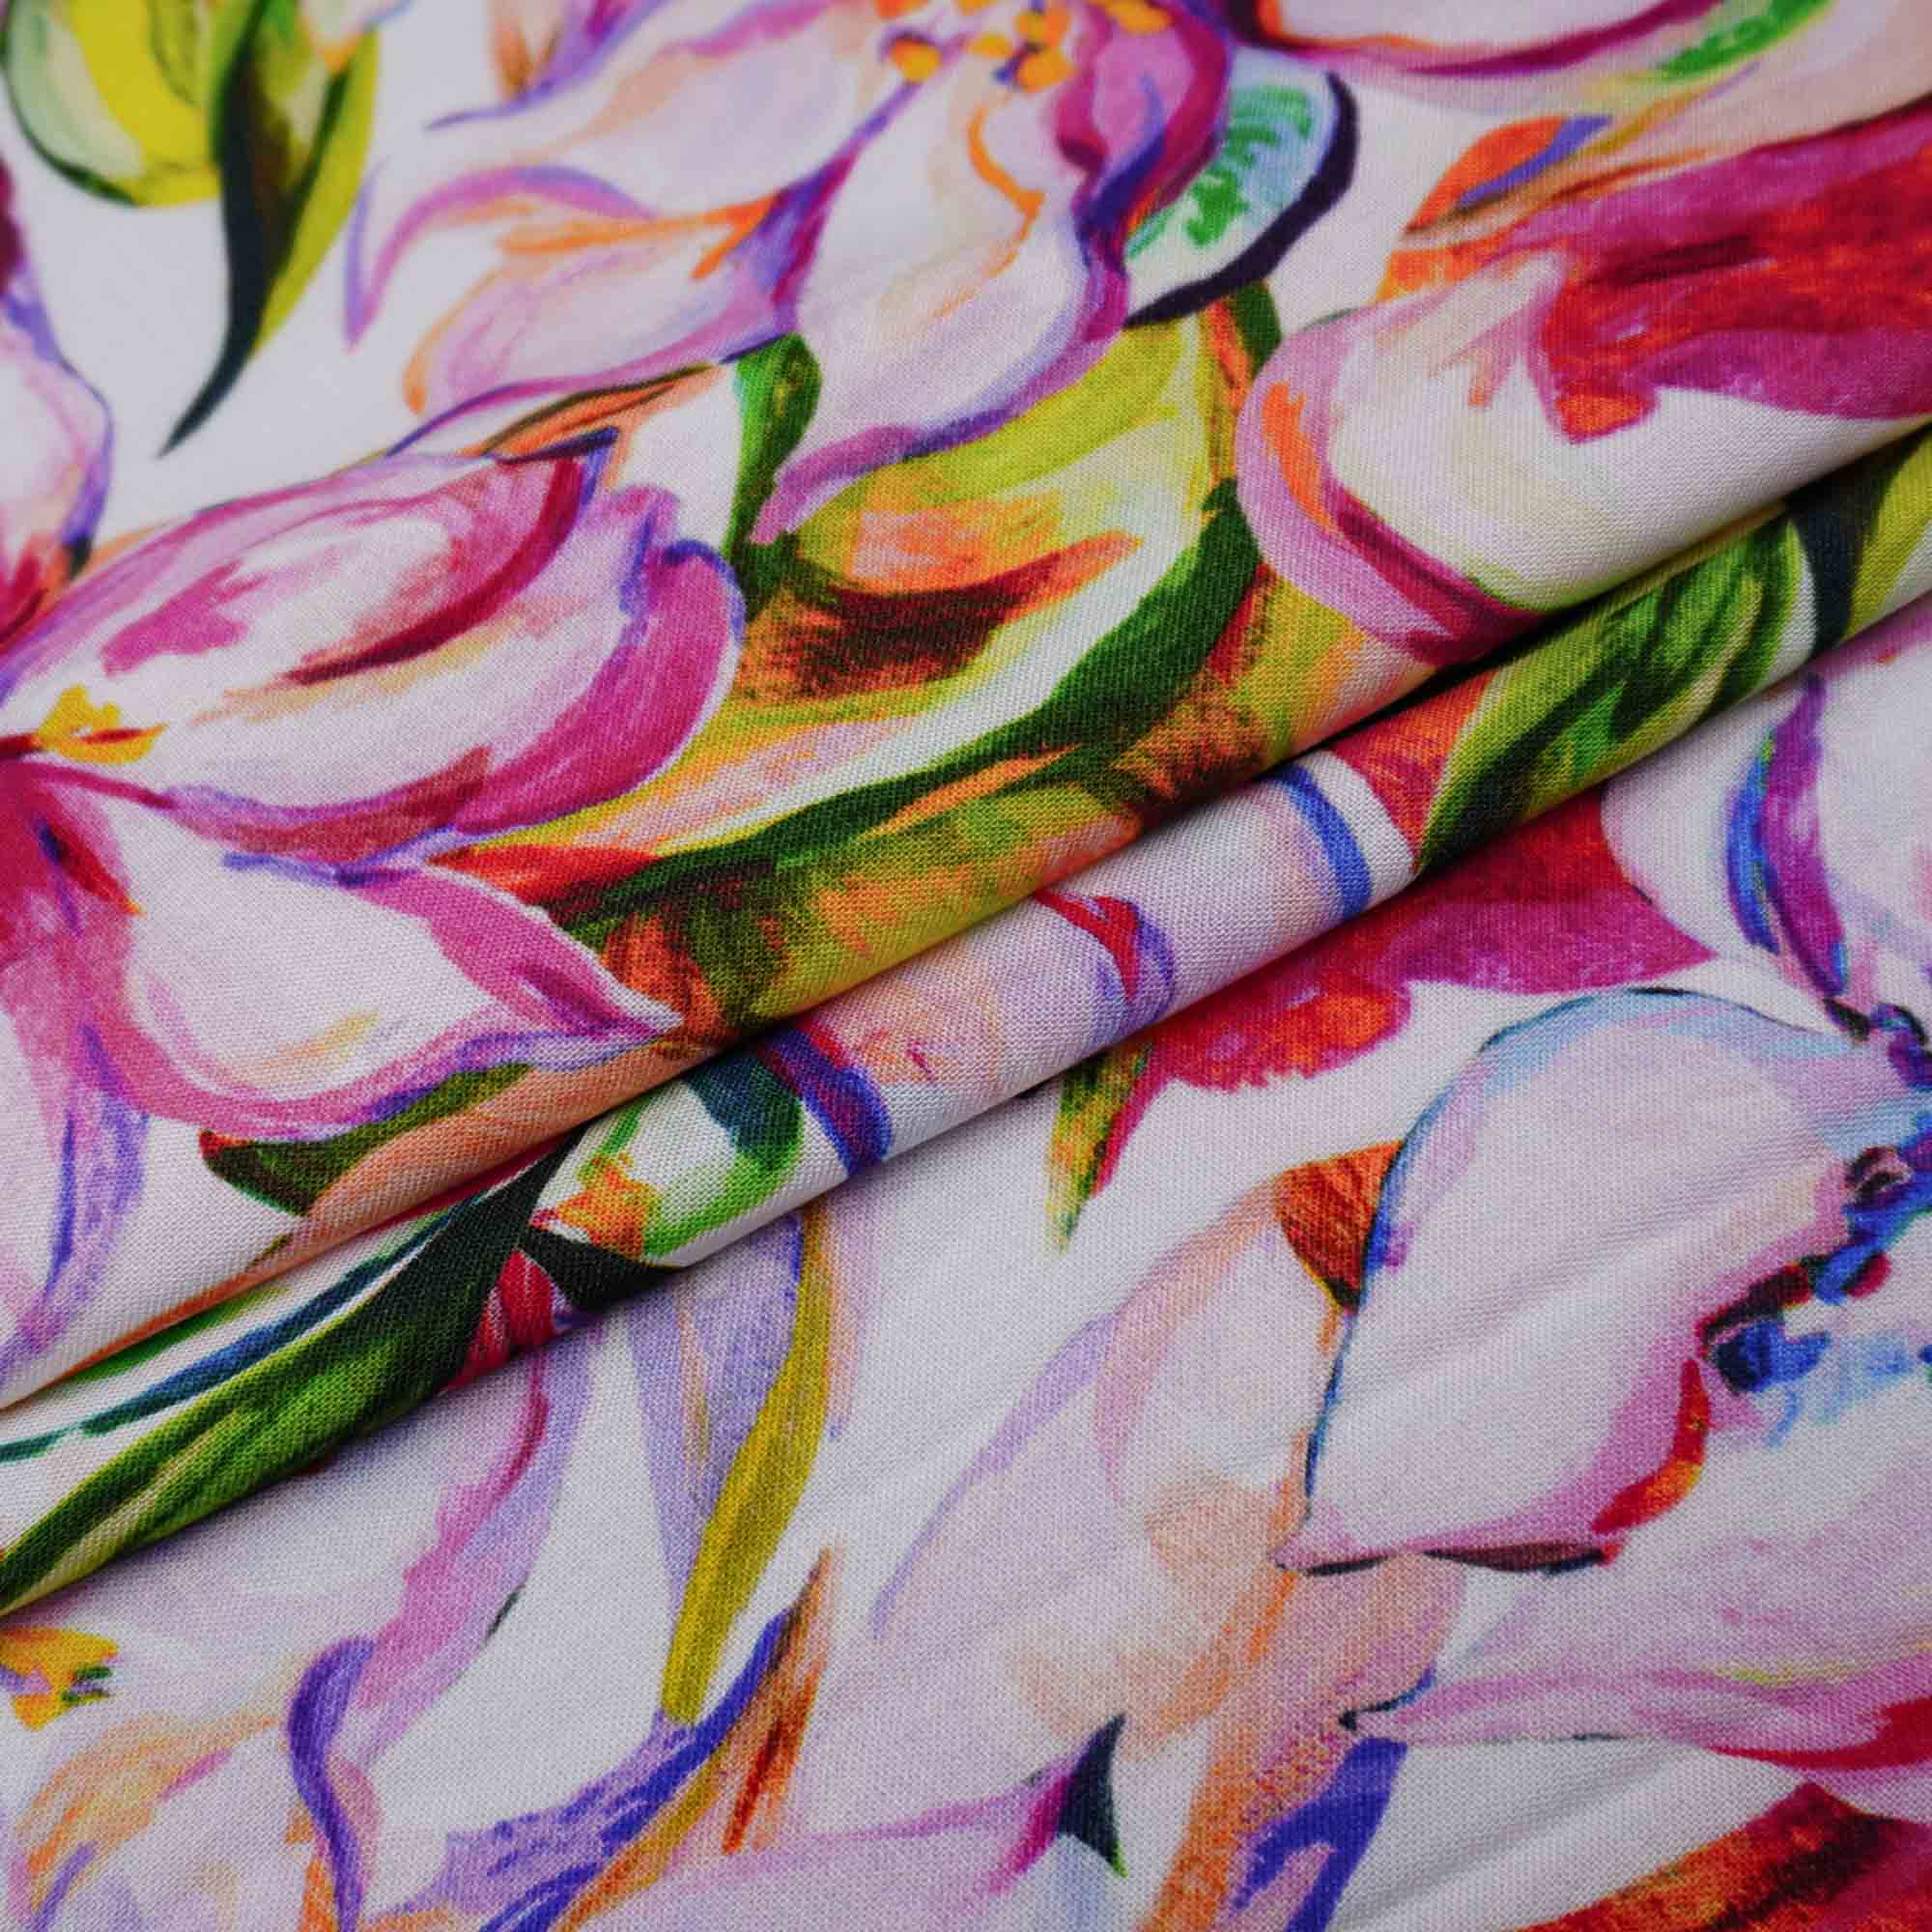 Tecido viscose branco estampado floral (tecido italiano legítimo)